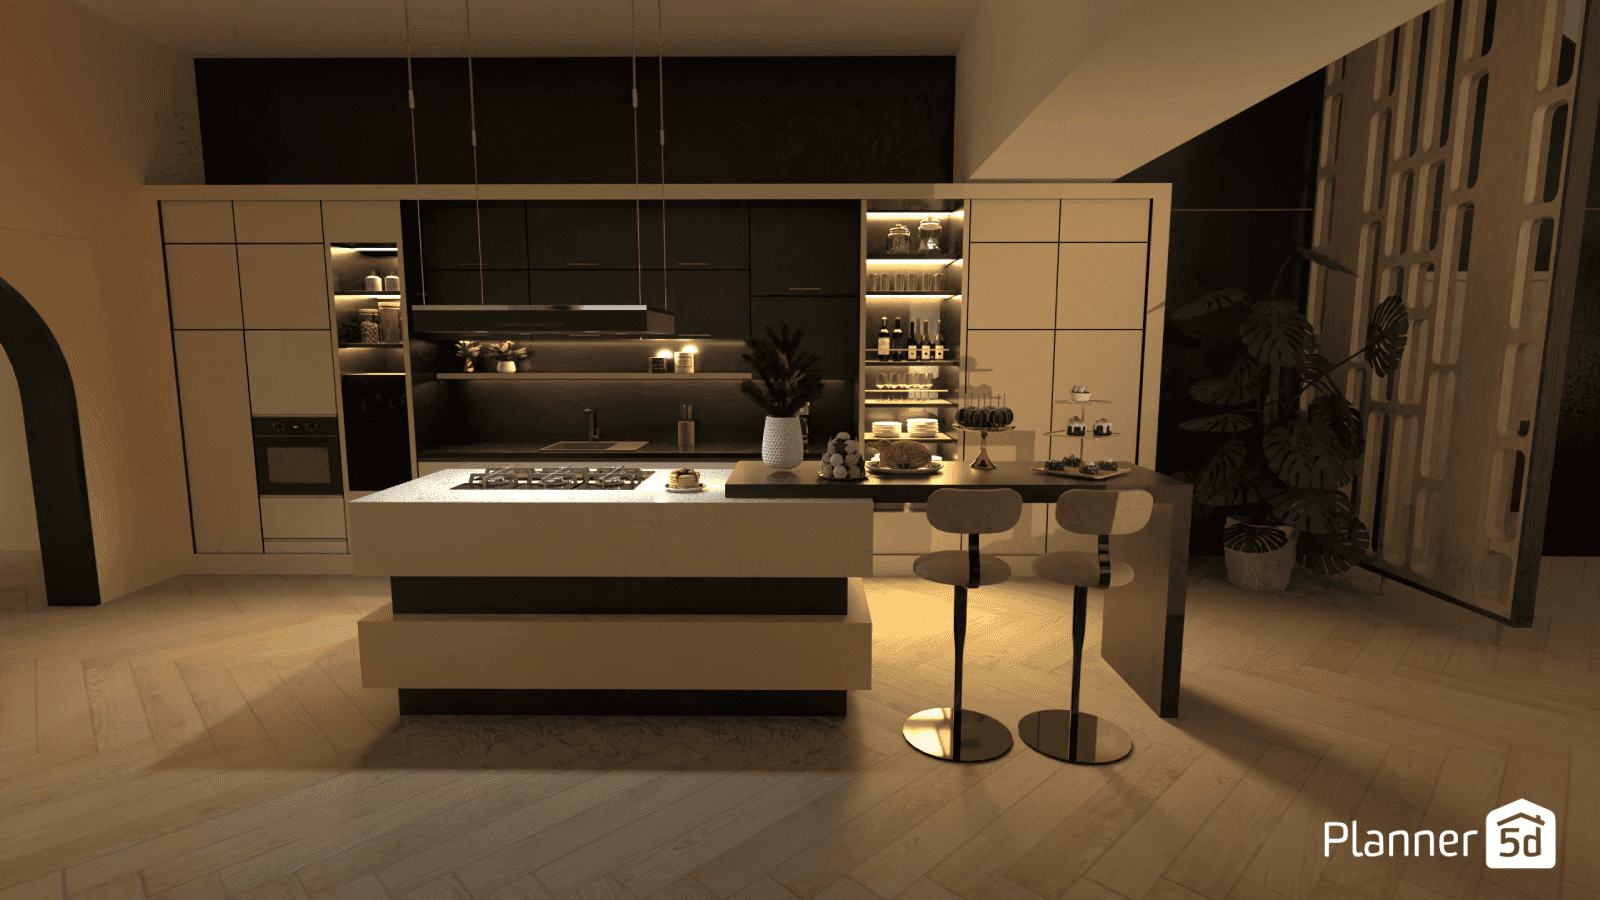 render creado en planner 5d cocina de lujo moderna